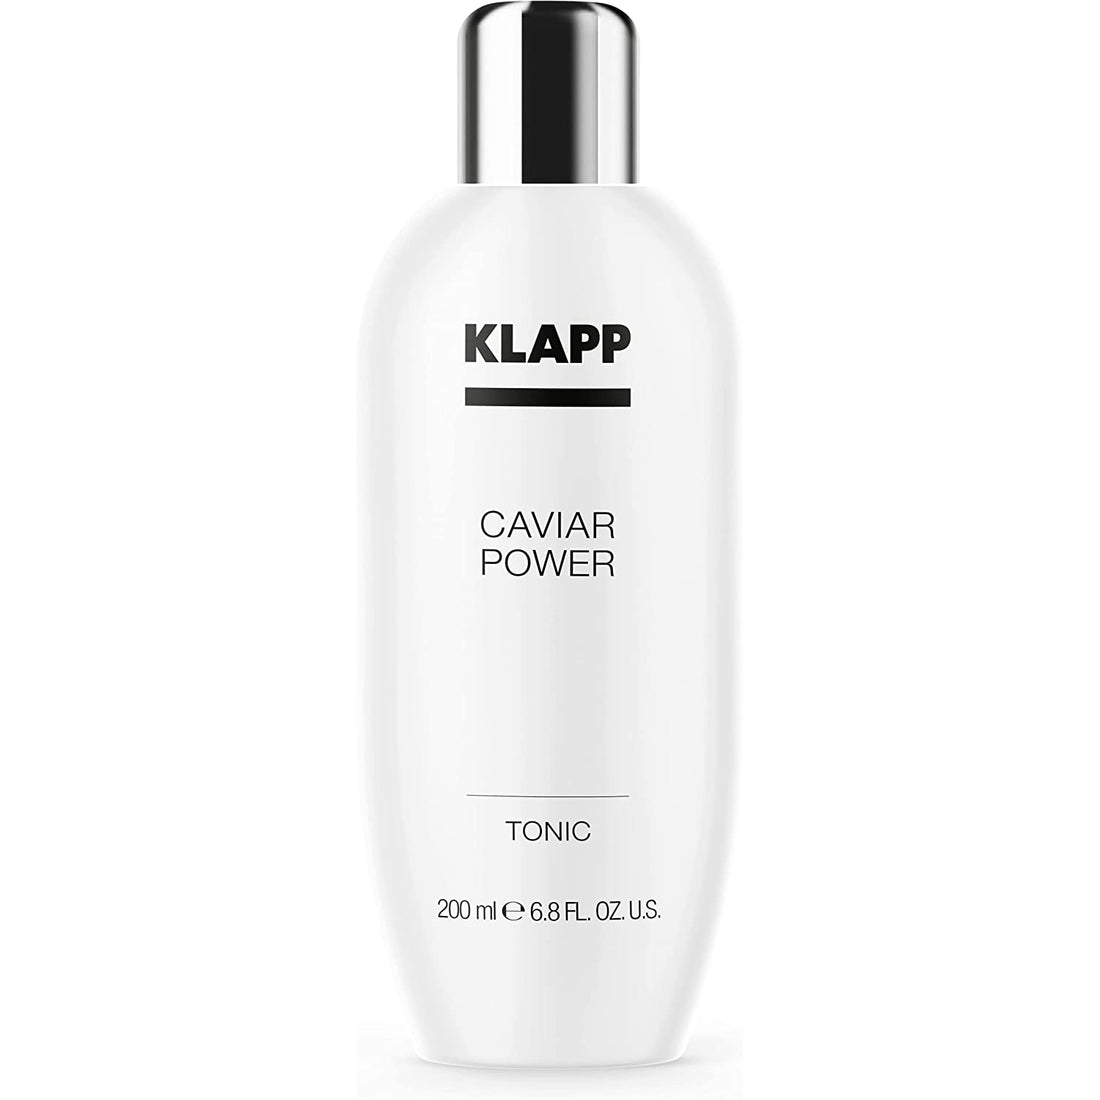 KLAPP - Caviar Power - Tonic lotion